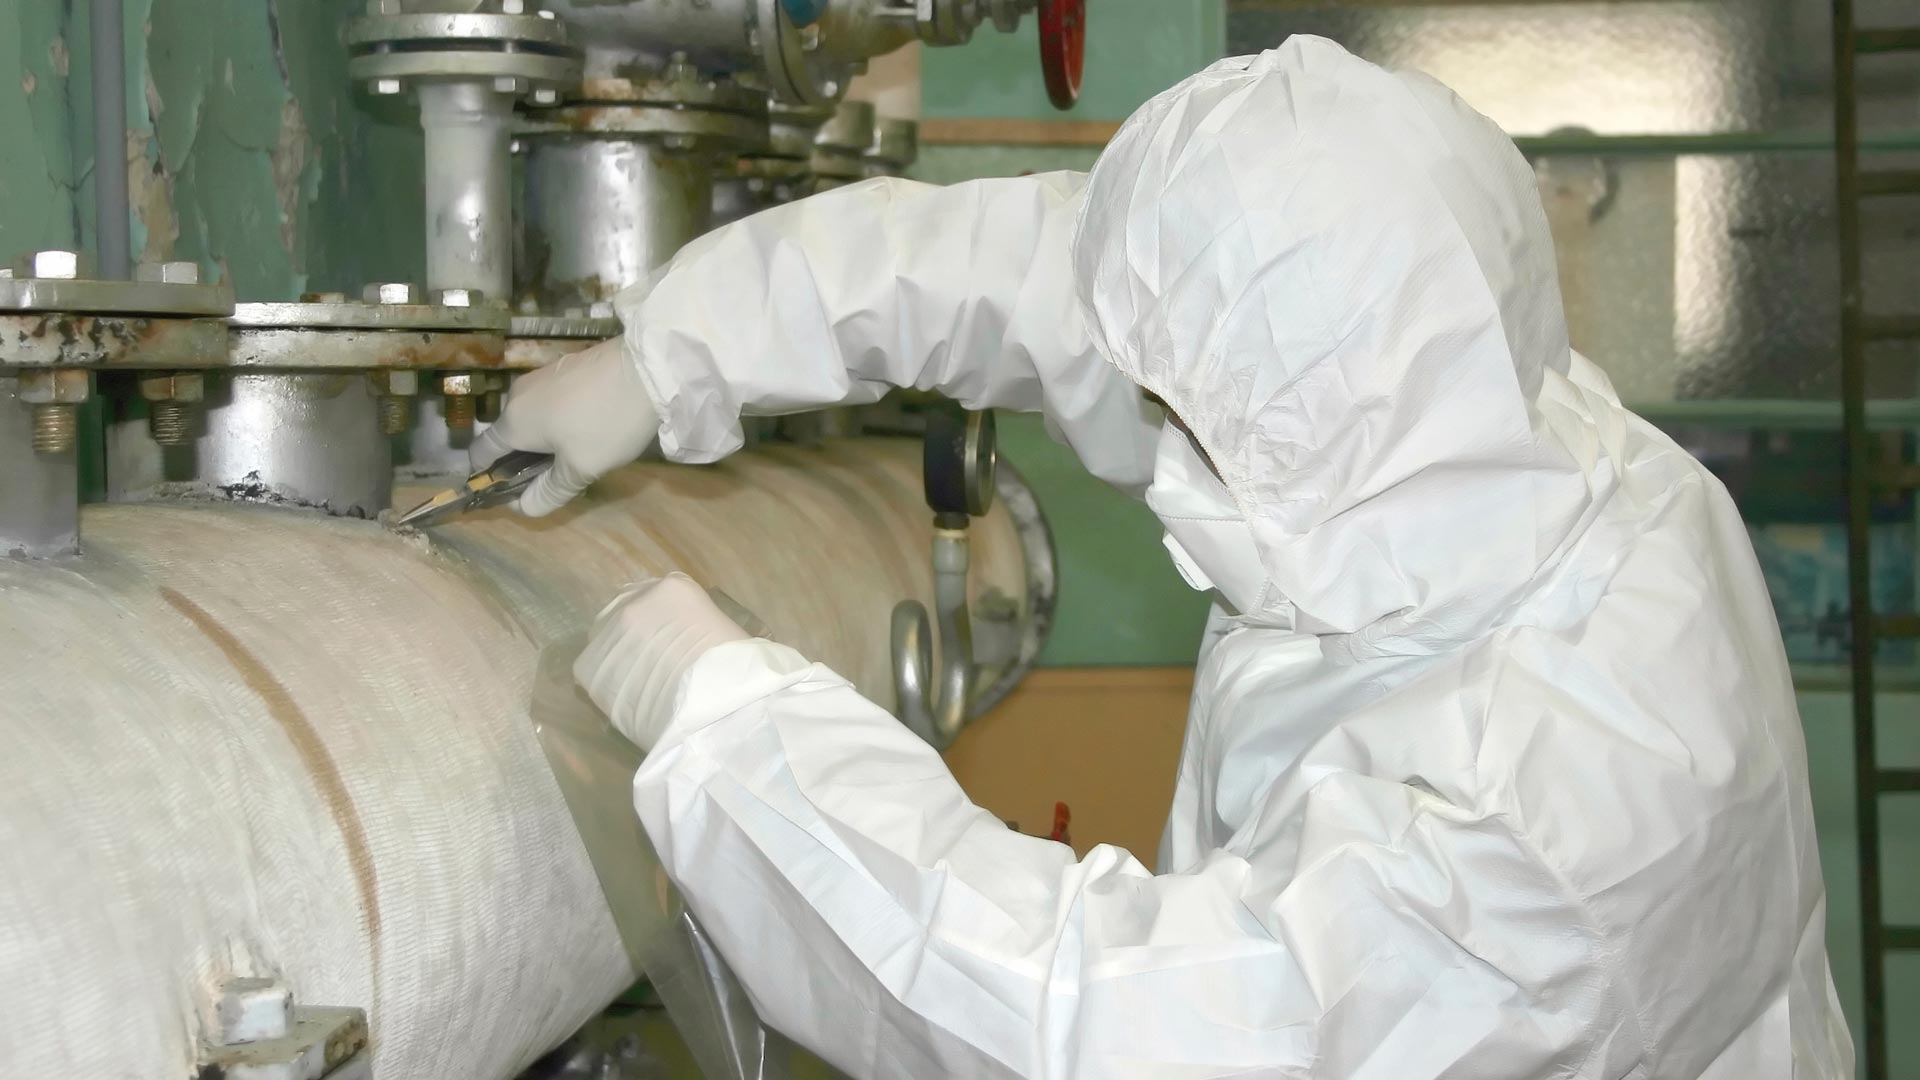 Das Bild zeigt einen Arbeiter in Schutzkleidung bei der Asbestsanierung von Rohr-Isolierungen